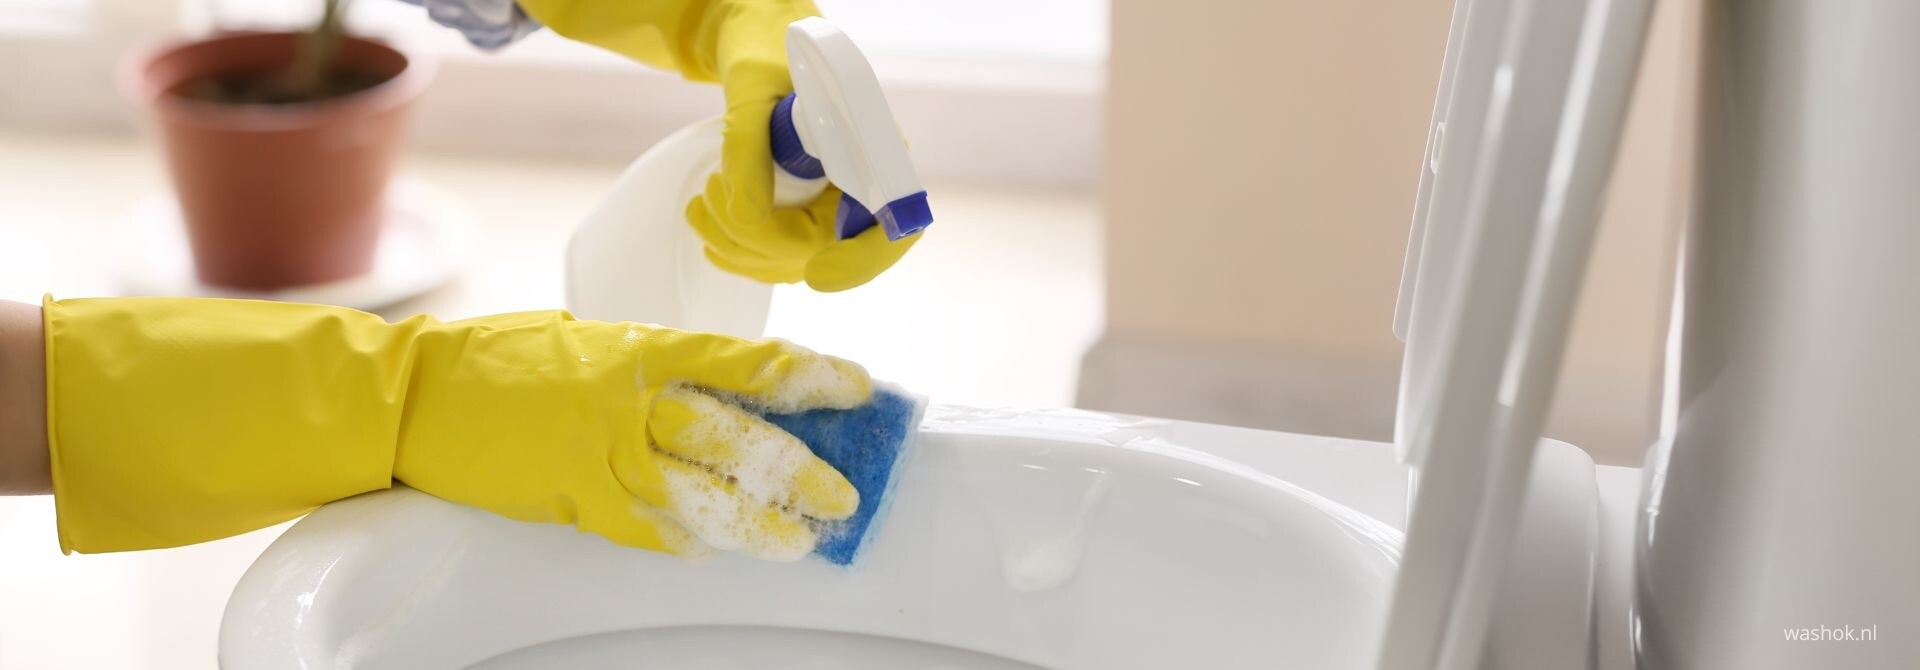 WC schoonmaken en urinesteen verwijderen? 7 stappen naar een schone wc pot